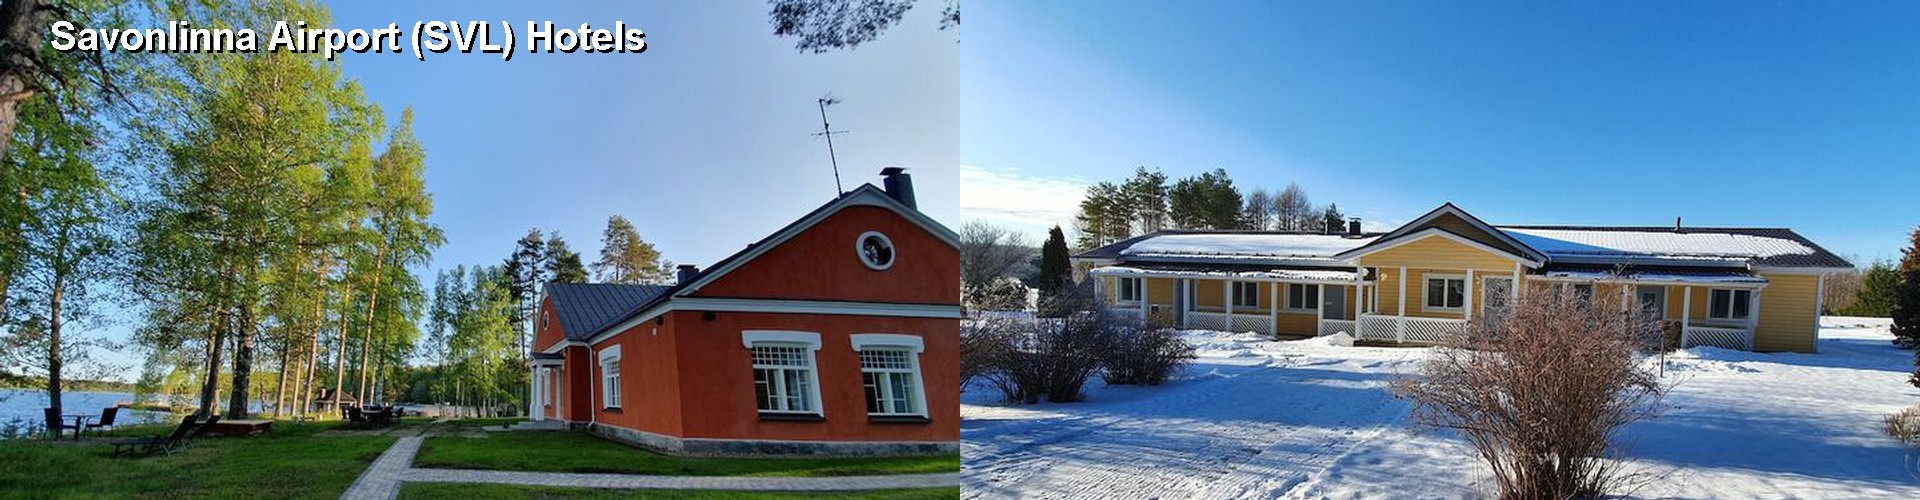 3 Best Hotels near Savonlinna Airport (SVL)